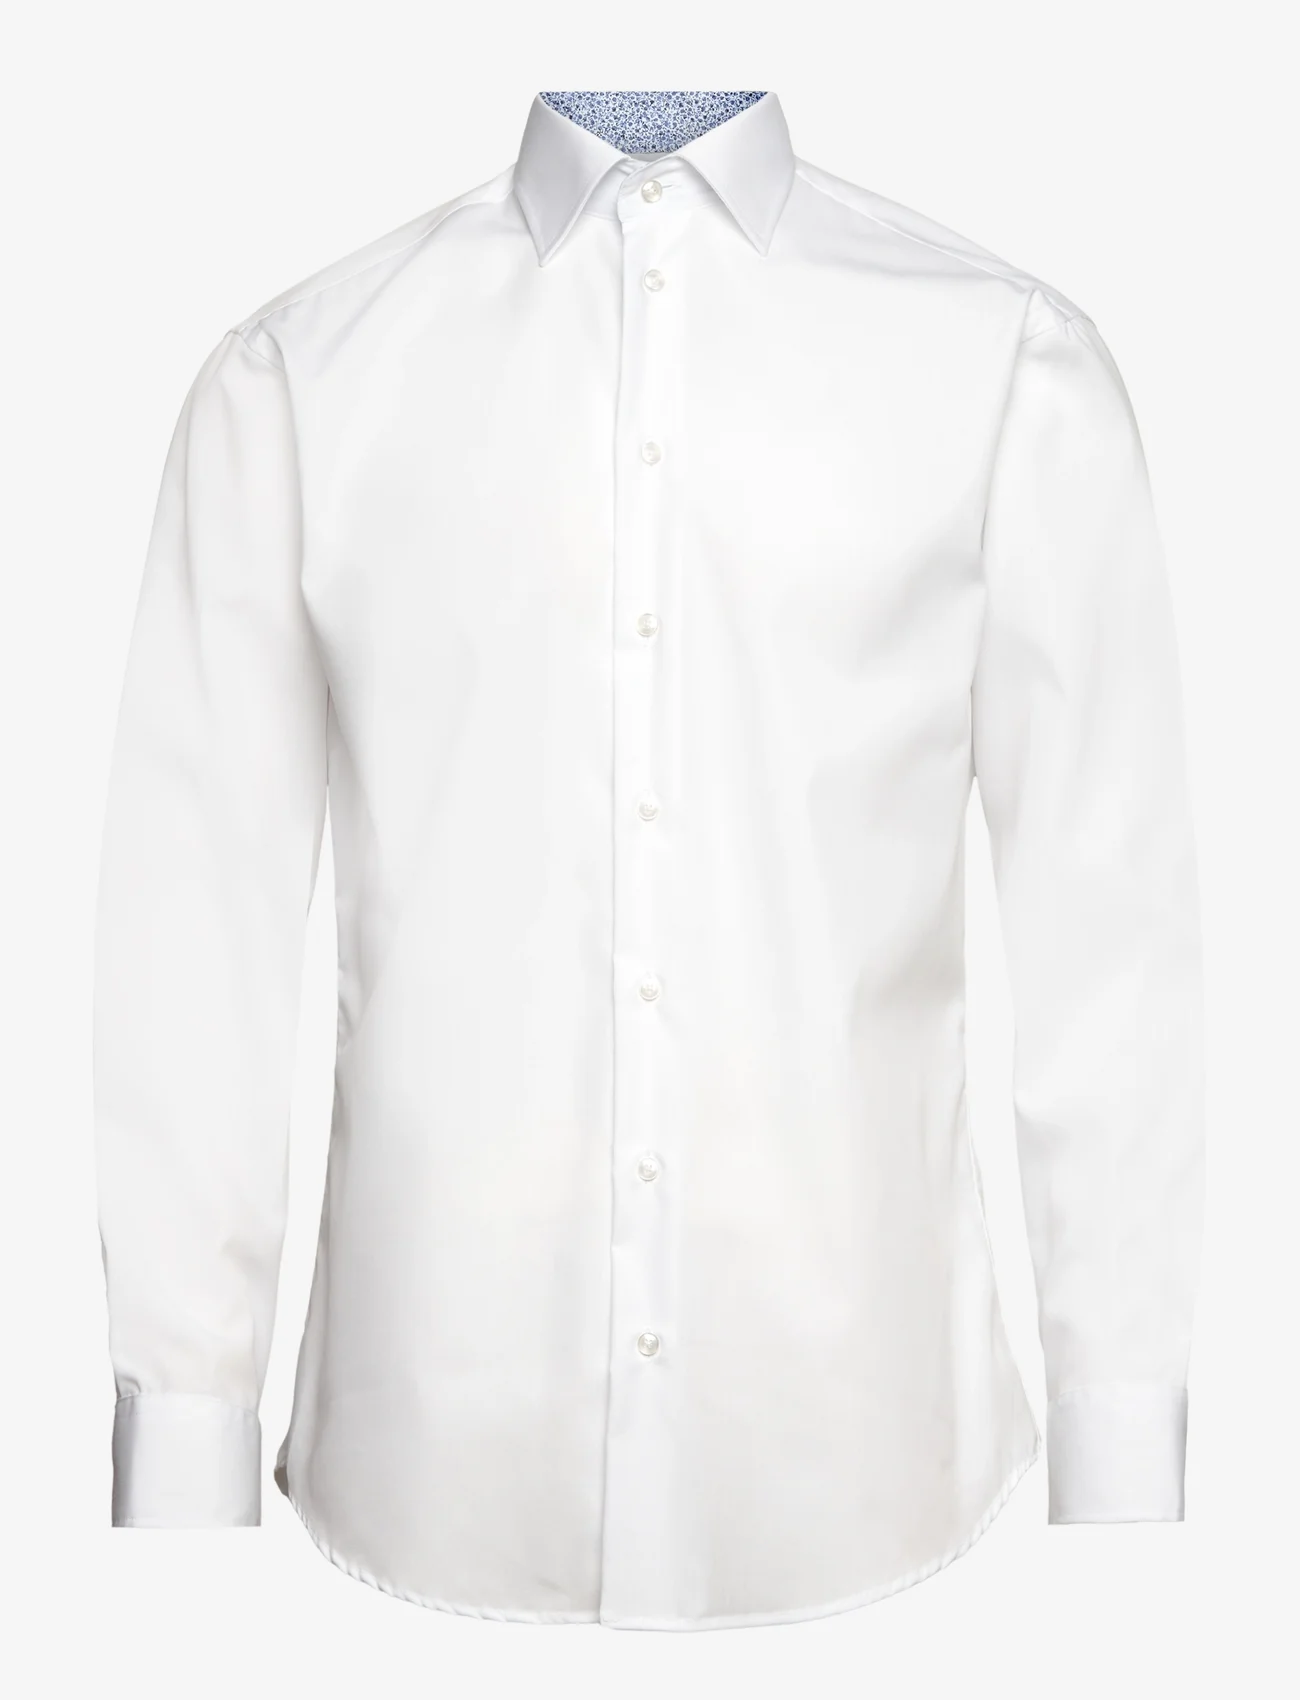 Bosweel Shirts Est. 1937 - Poplin w. contrast - peruskauluspaidat - white - 0